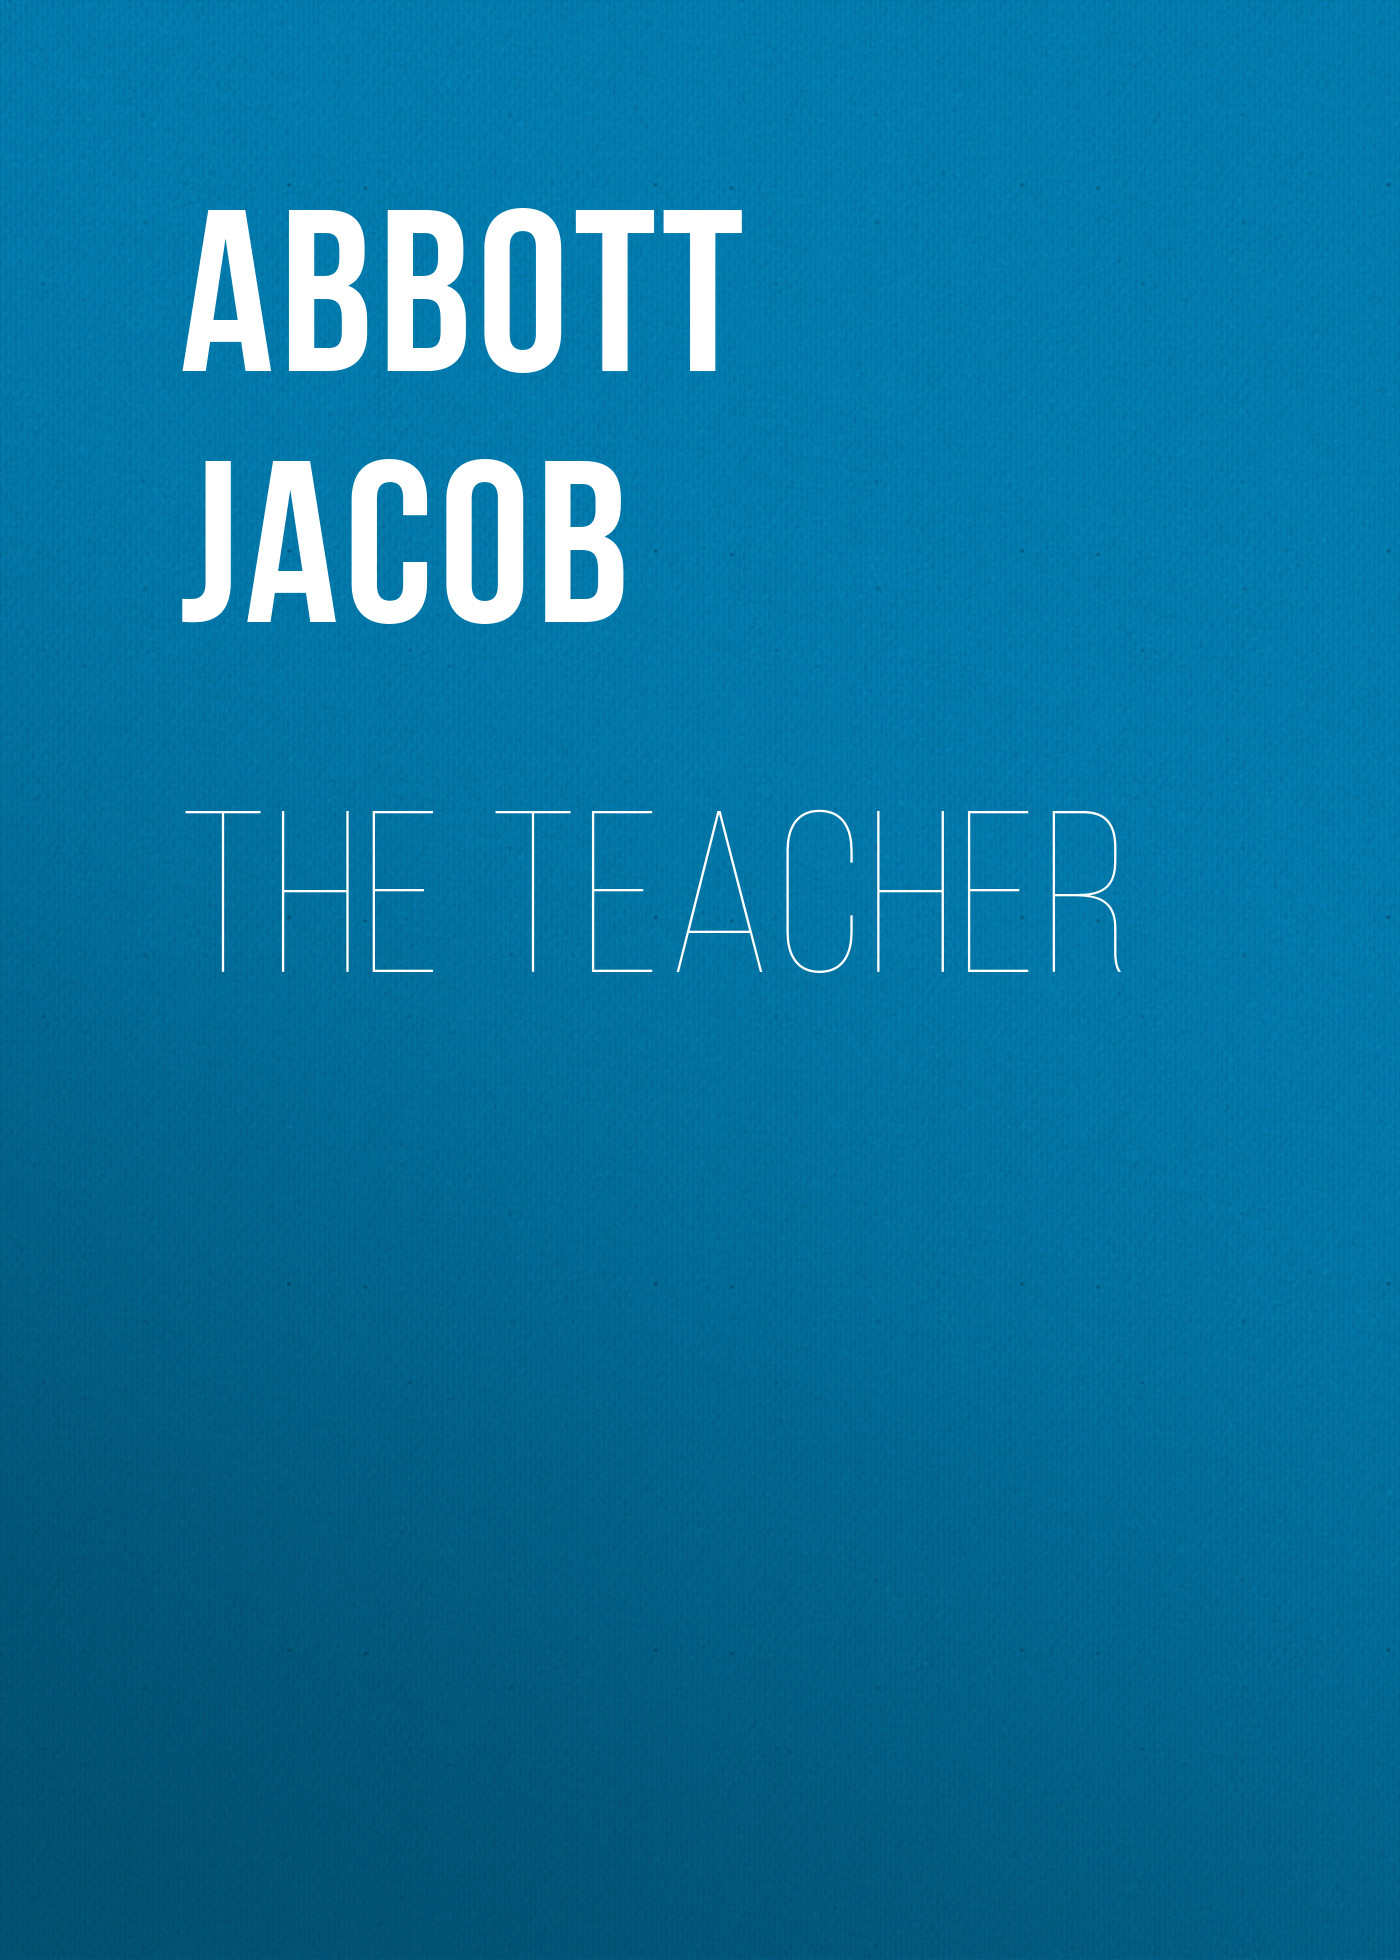 Книга The Teacher из серии , созданная Jacob Abbott, может относится к жанру Зарубежная образовательная литература, Педагогика. Стоимость электронной книги The Teacher с идентификатором 36365406 составляет 0 руб.